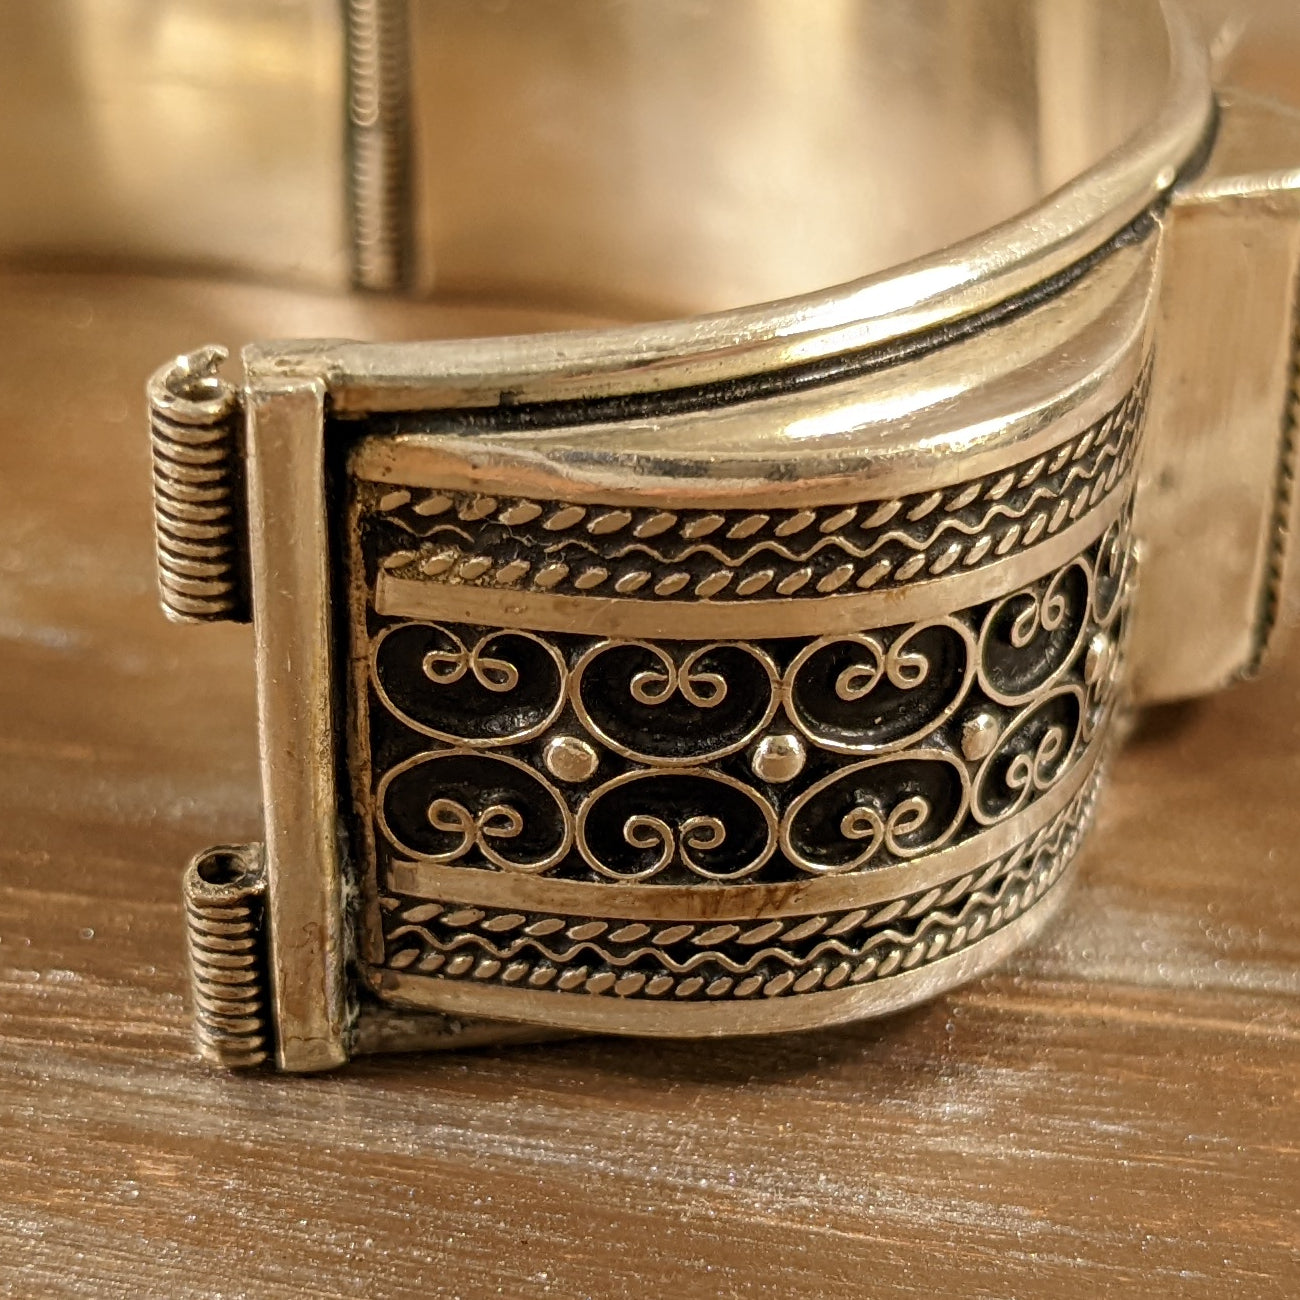 ヴィンテージ シルバー925 フィリグリー バングル ブレスレット72.5g / Vintage Sterling Silver Filigree Bangle Bracelet